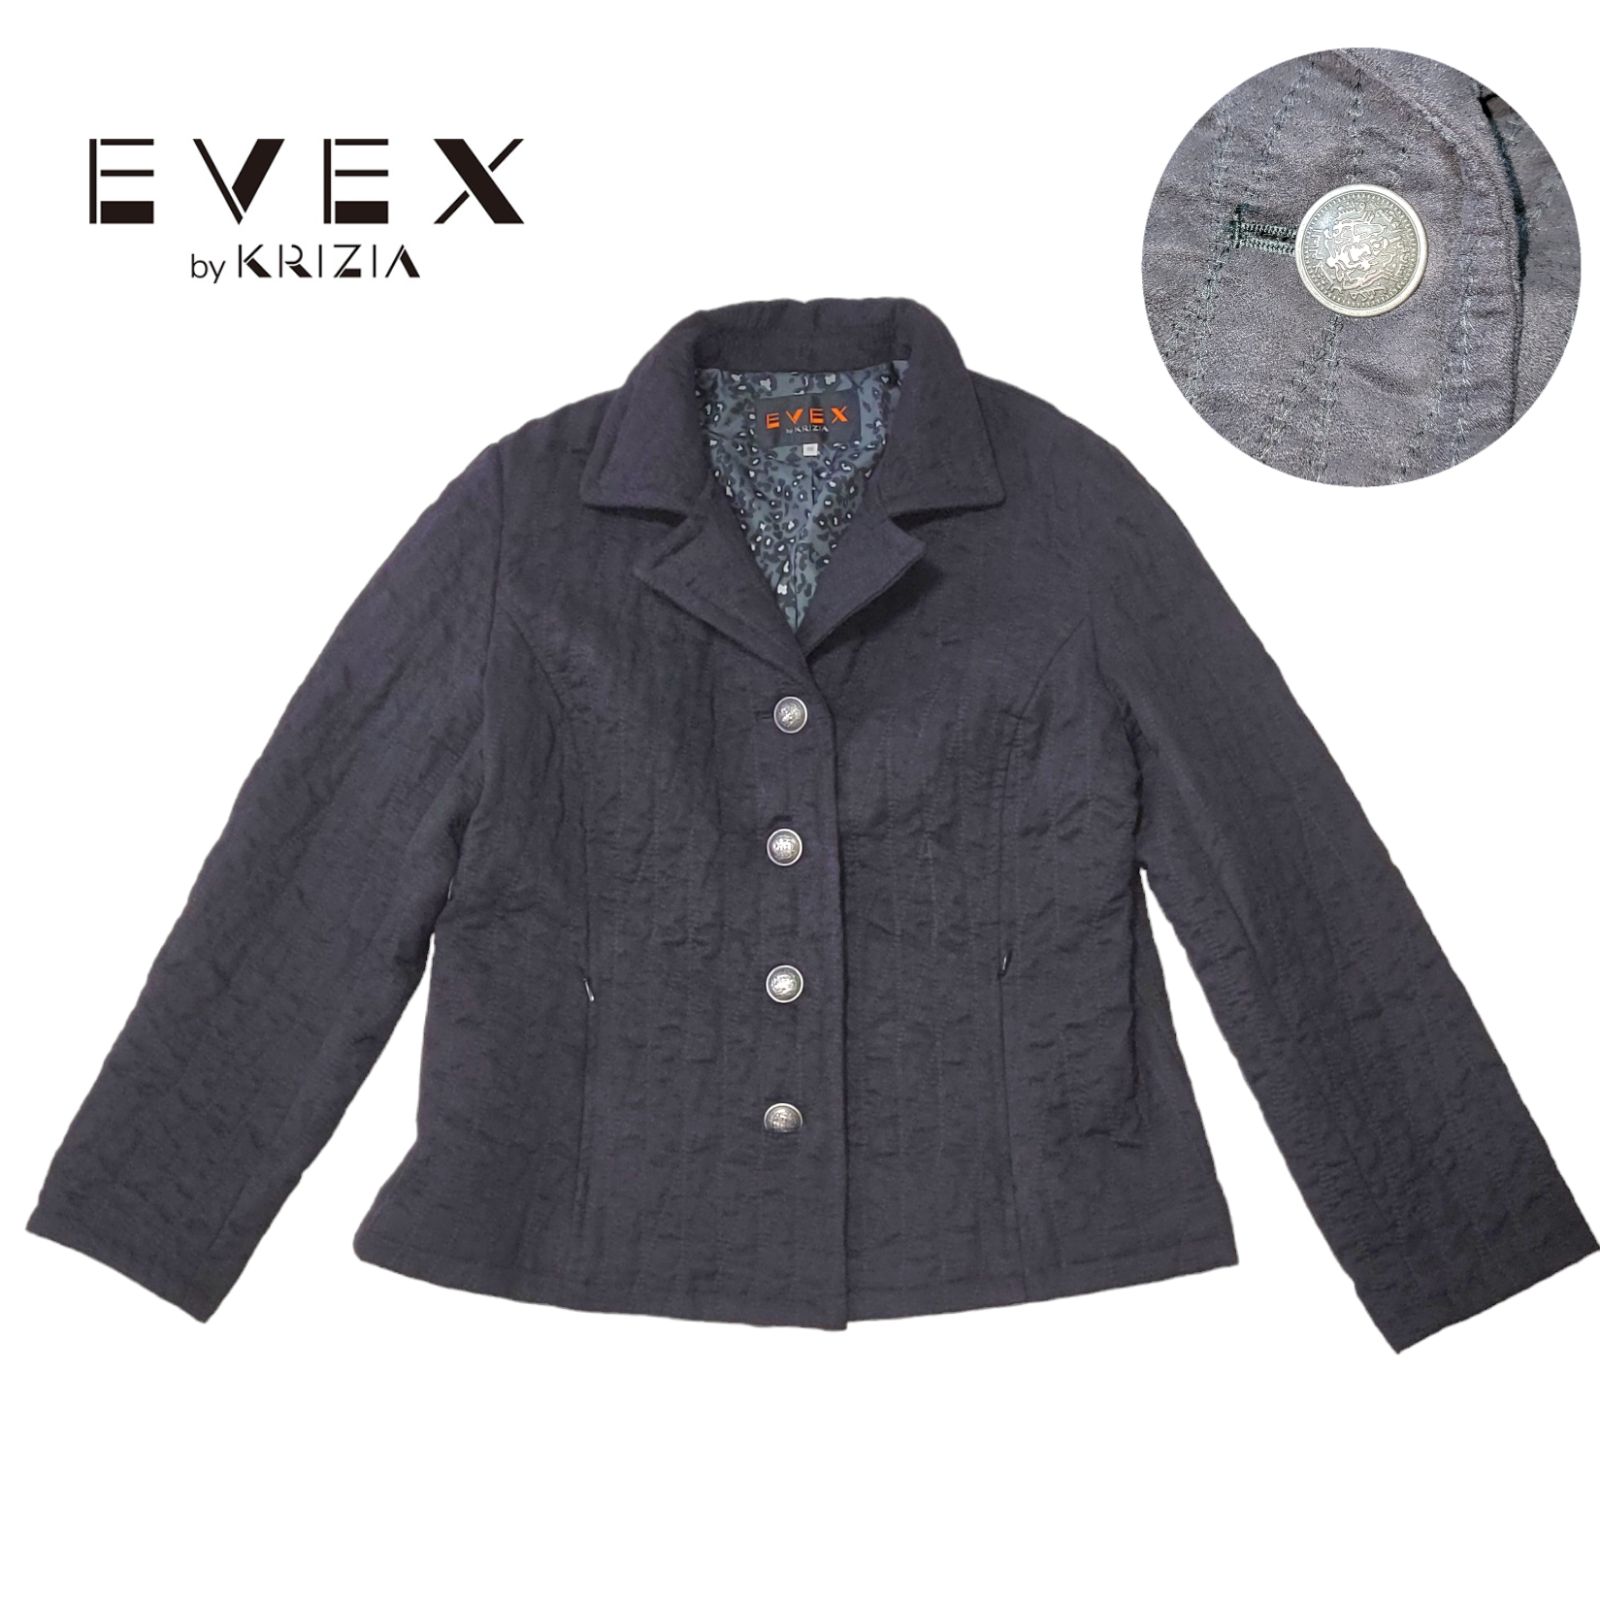 【ゆったりサイズ】48 EVEX BY KEIZIA キルティングジャケット